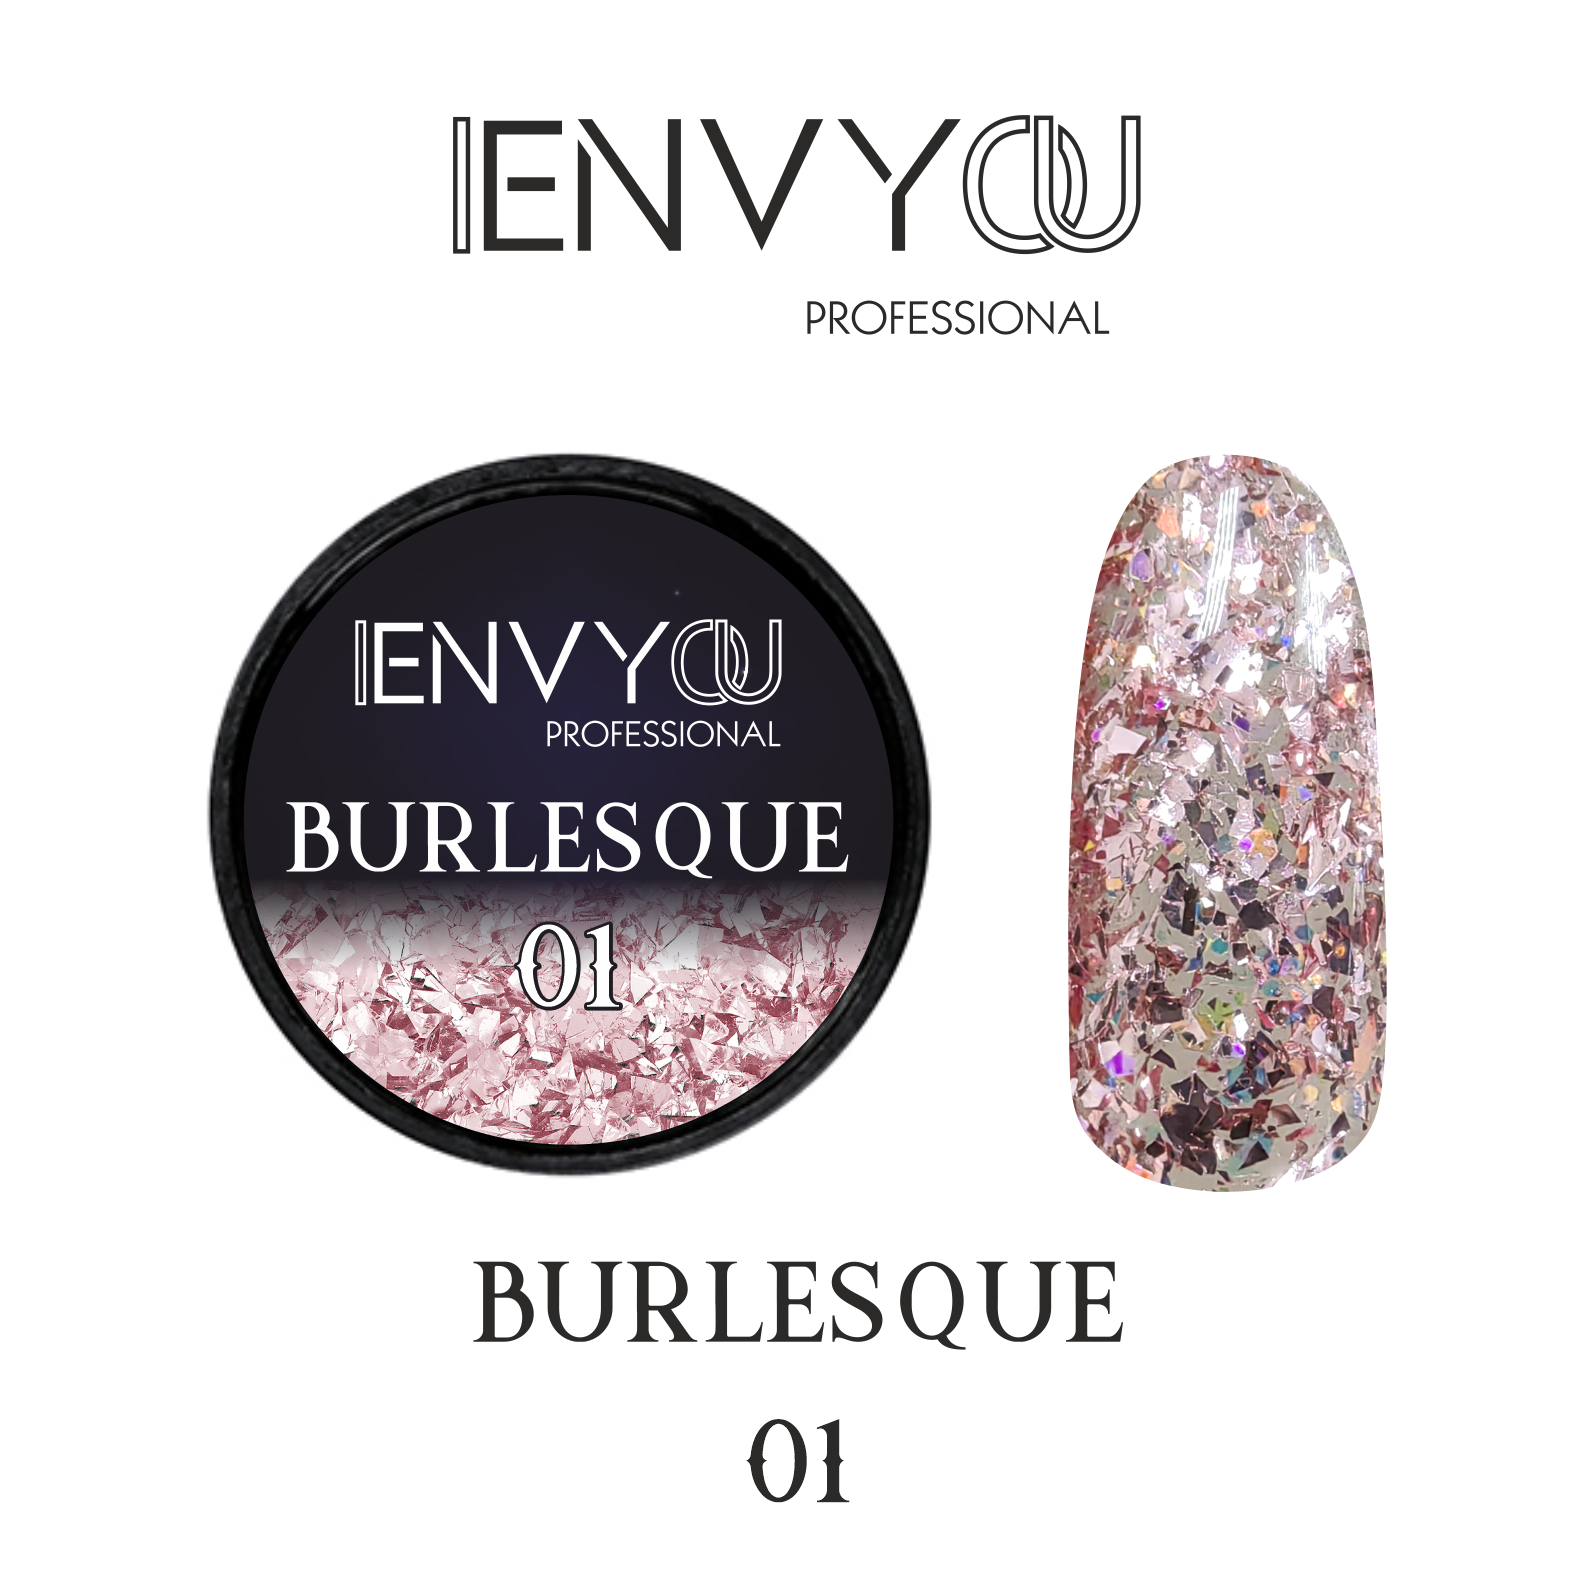 ENVY Burlesque 01 6g